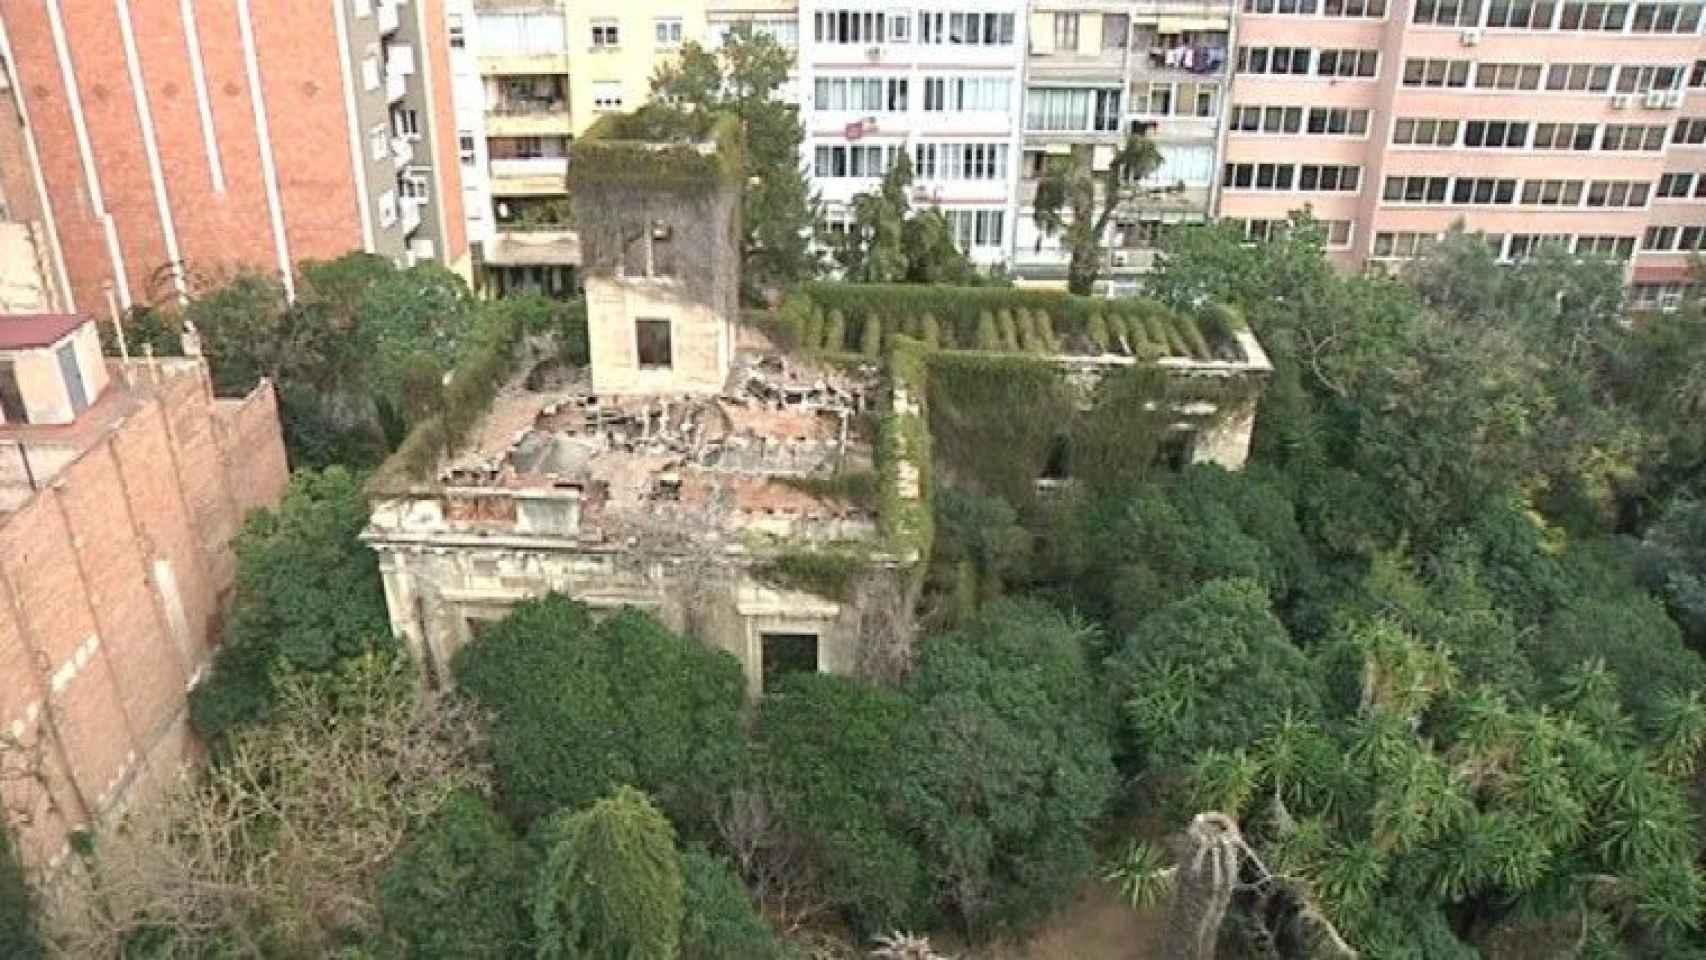 La finca de Can Ferrer, con el edificio en muy mal estado, que se ha recuperado como jardín público / AYUNTAMIENTO DE BARCELONA